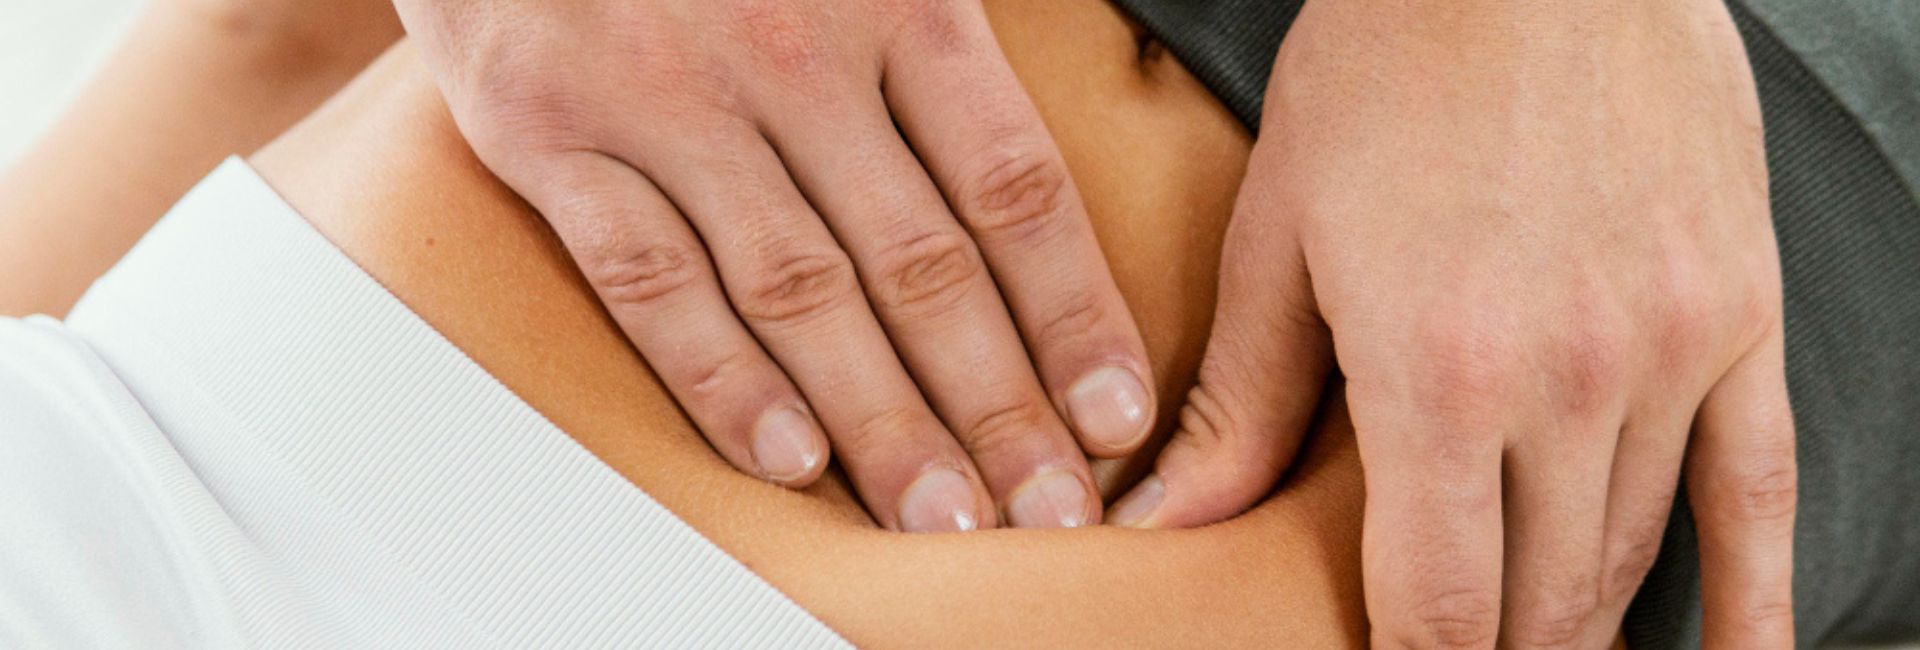 Elementi di osteopatia viscerale contemporanea a supporto della terapia manuale